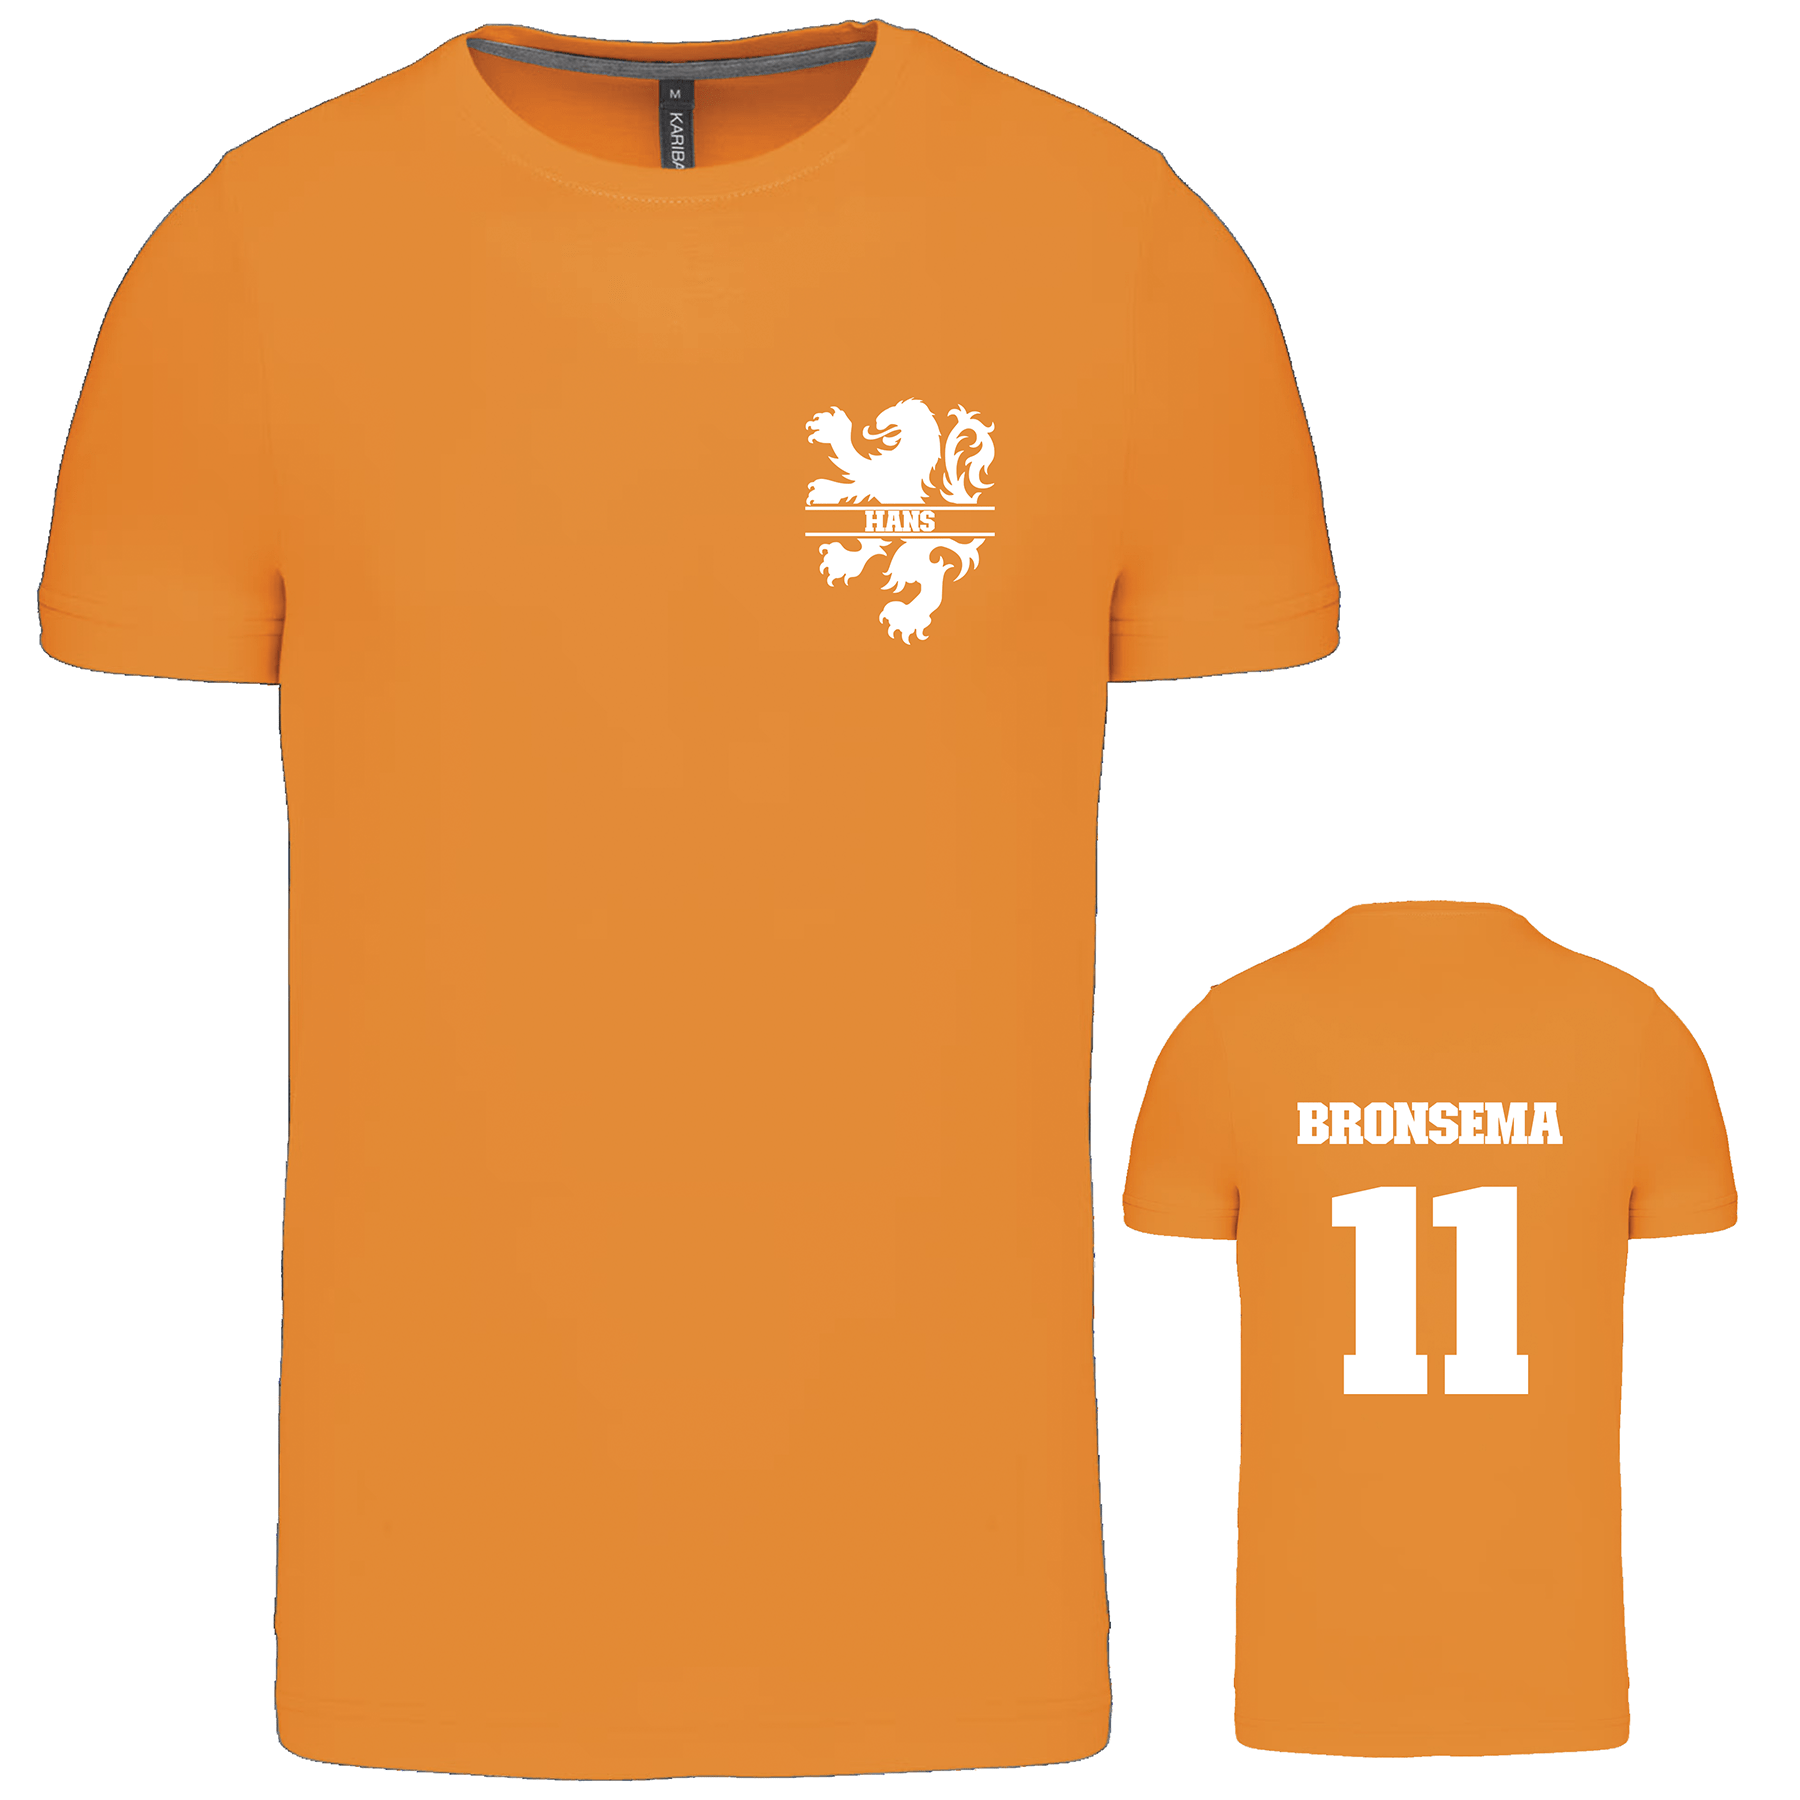 Gepersonaliseerd oranje T-shirt met naam en rugnummer.